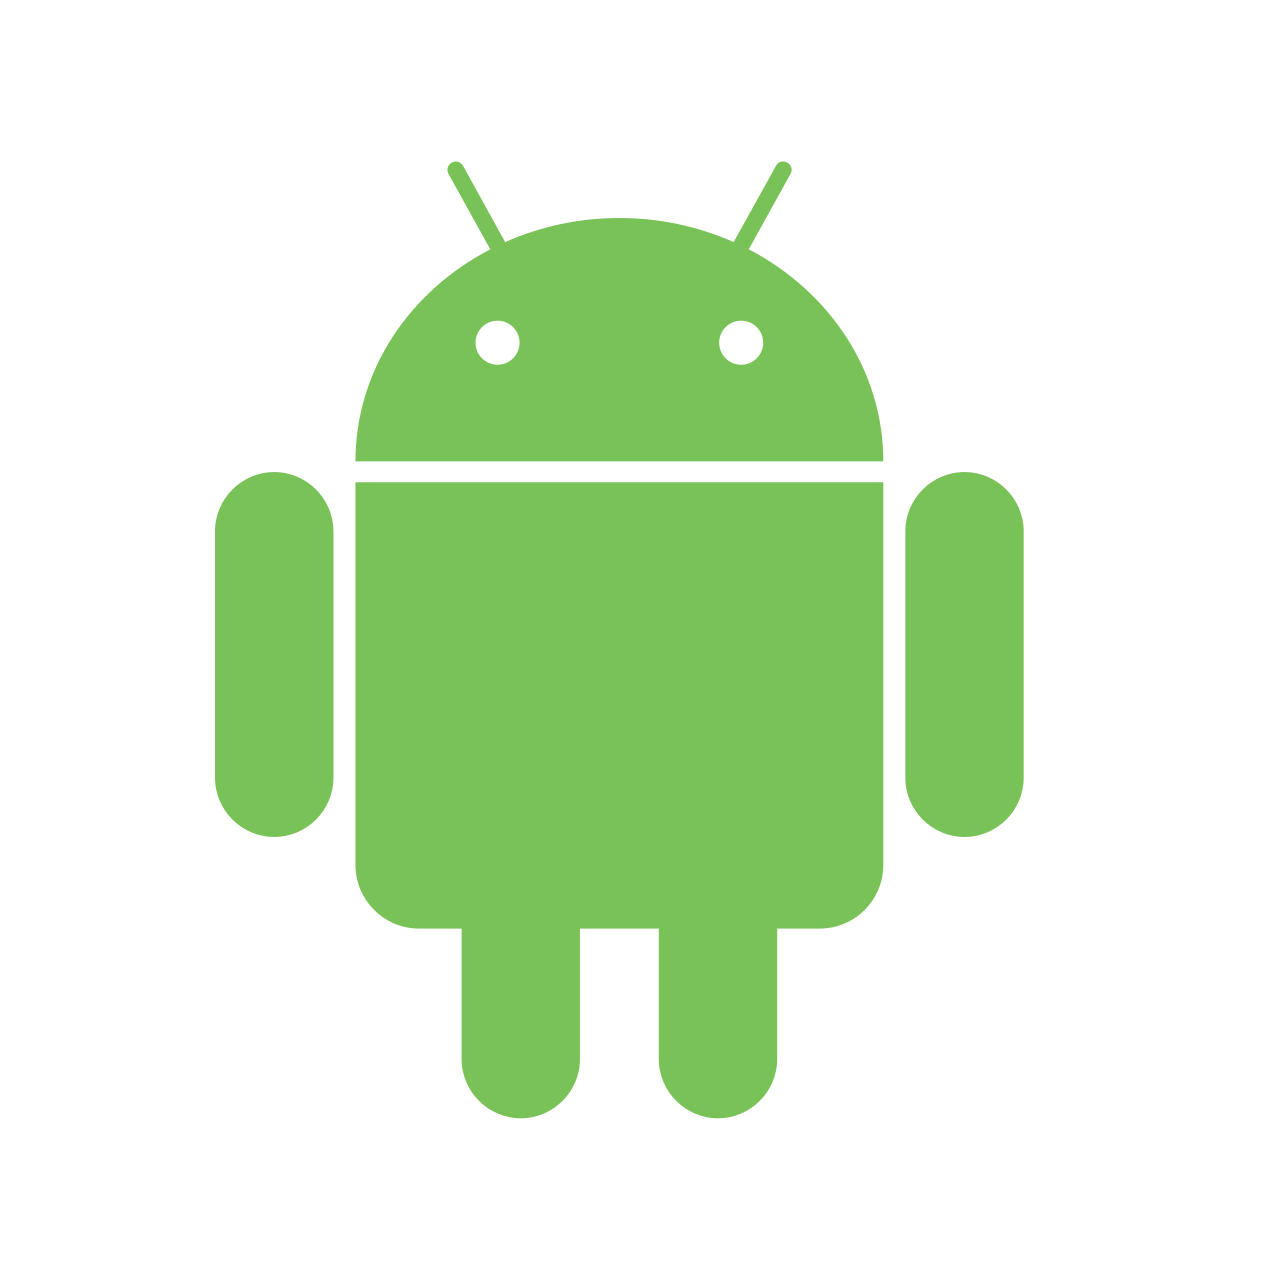 Приложение Мостбет для Android